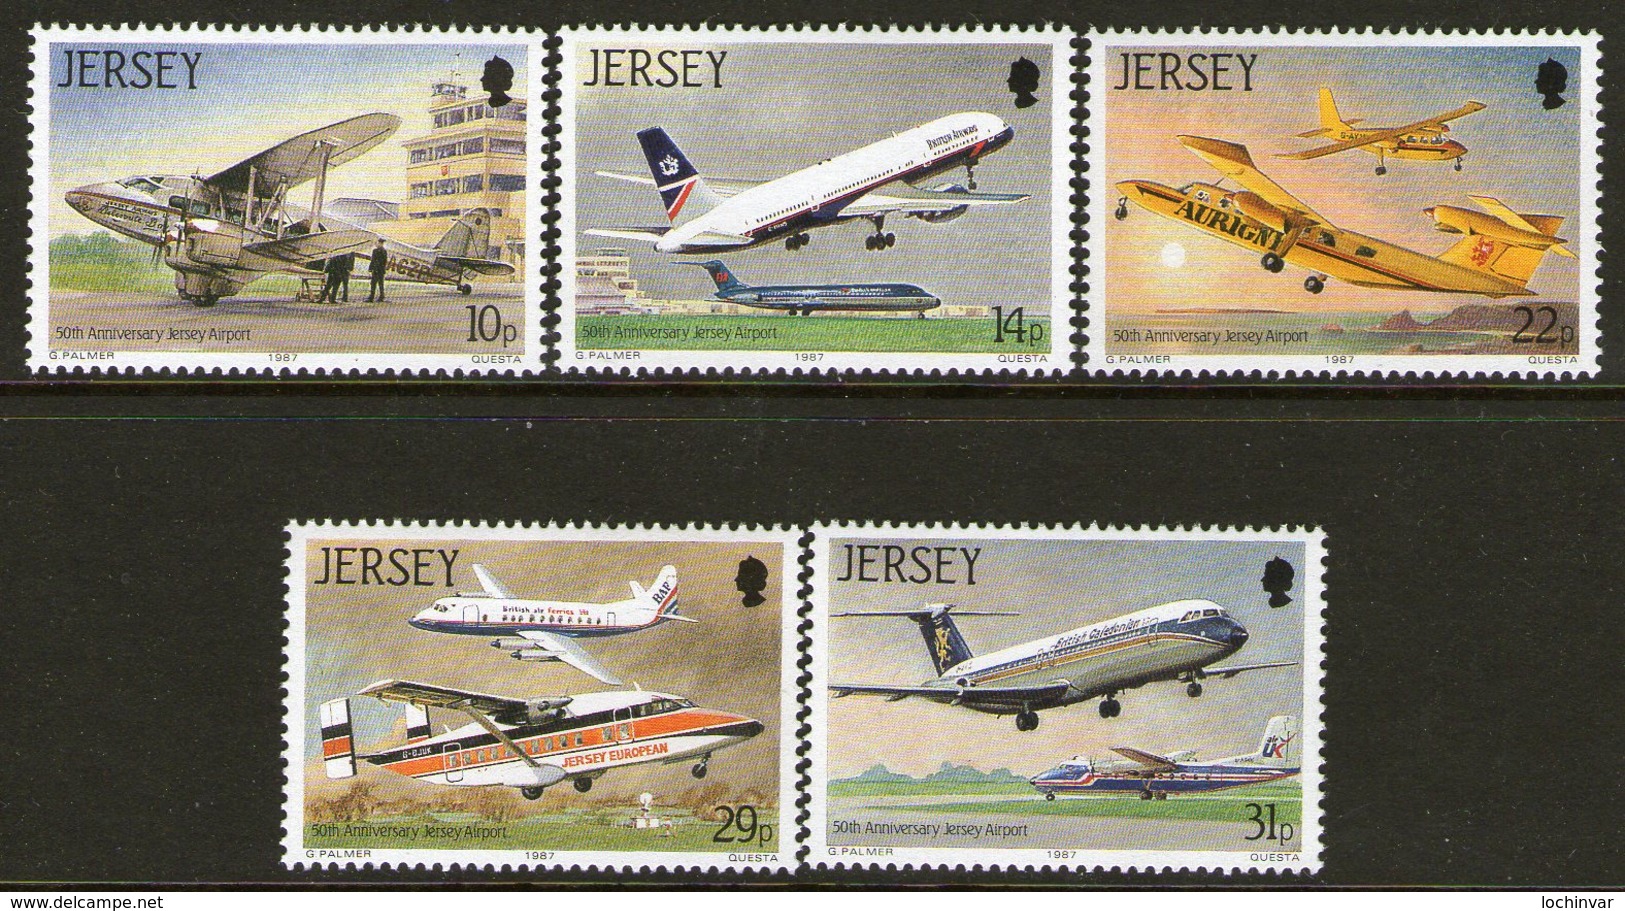 JERSEY, 1987 PLANES 5 MNH - Jersey